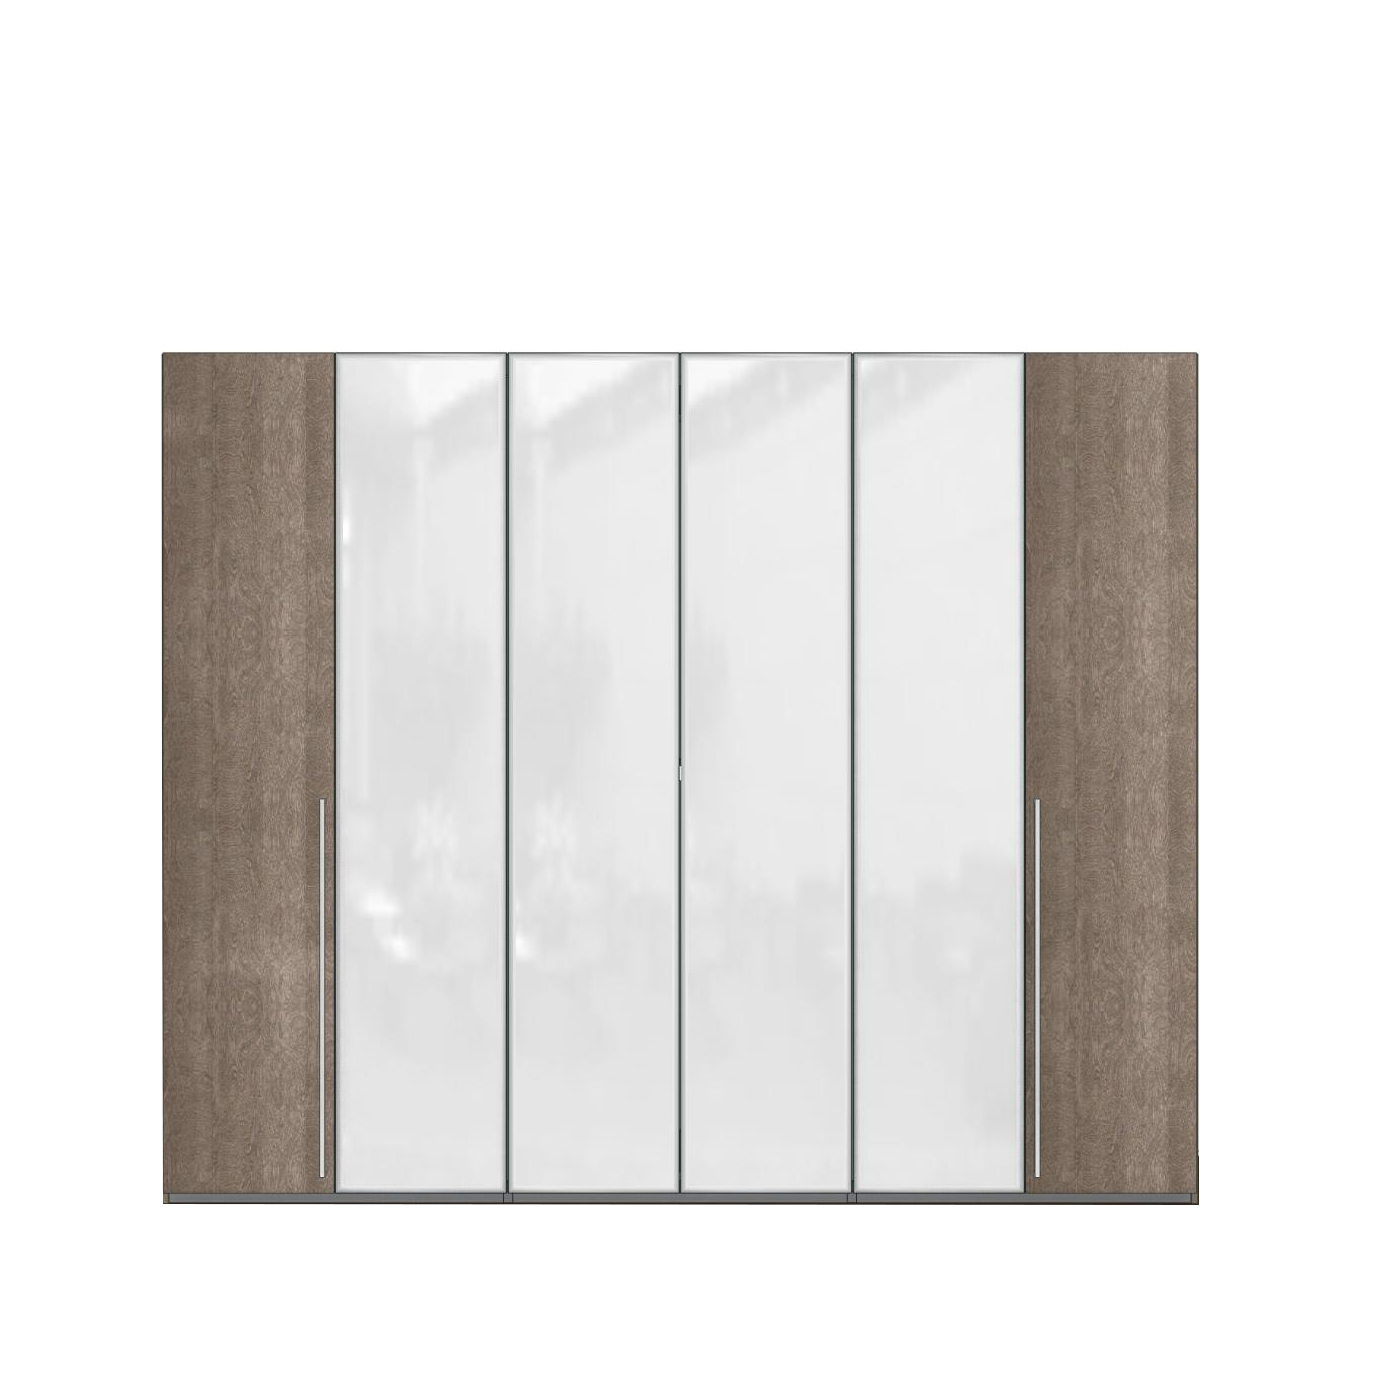 Шкаф платяной Elite silver, 6-х дверный, с зеркалами, цвет: серебристая береза, 278x61x228 см (154AR6.02PL)154AR6.02PL